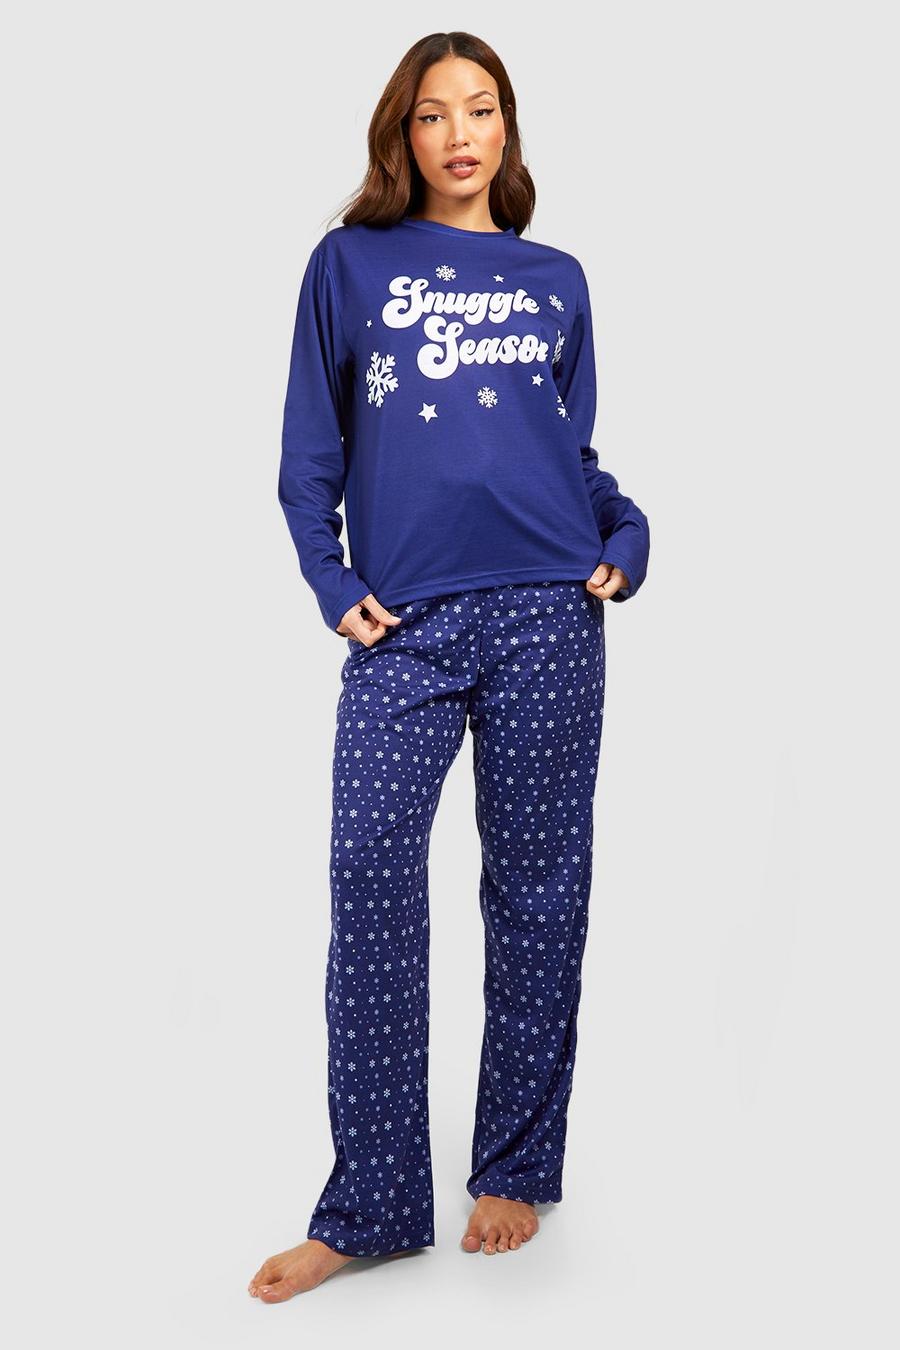 Blue Tall Snuggle Season Pyjamas image number 1